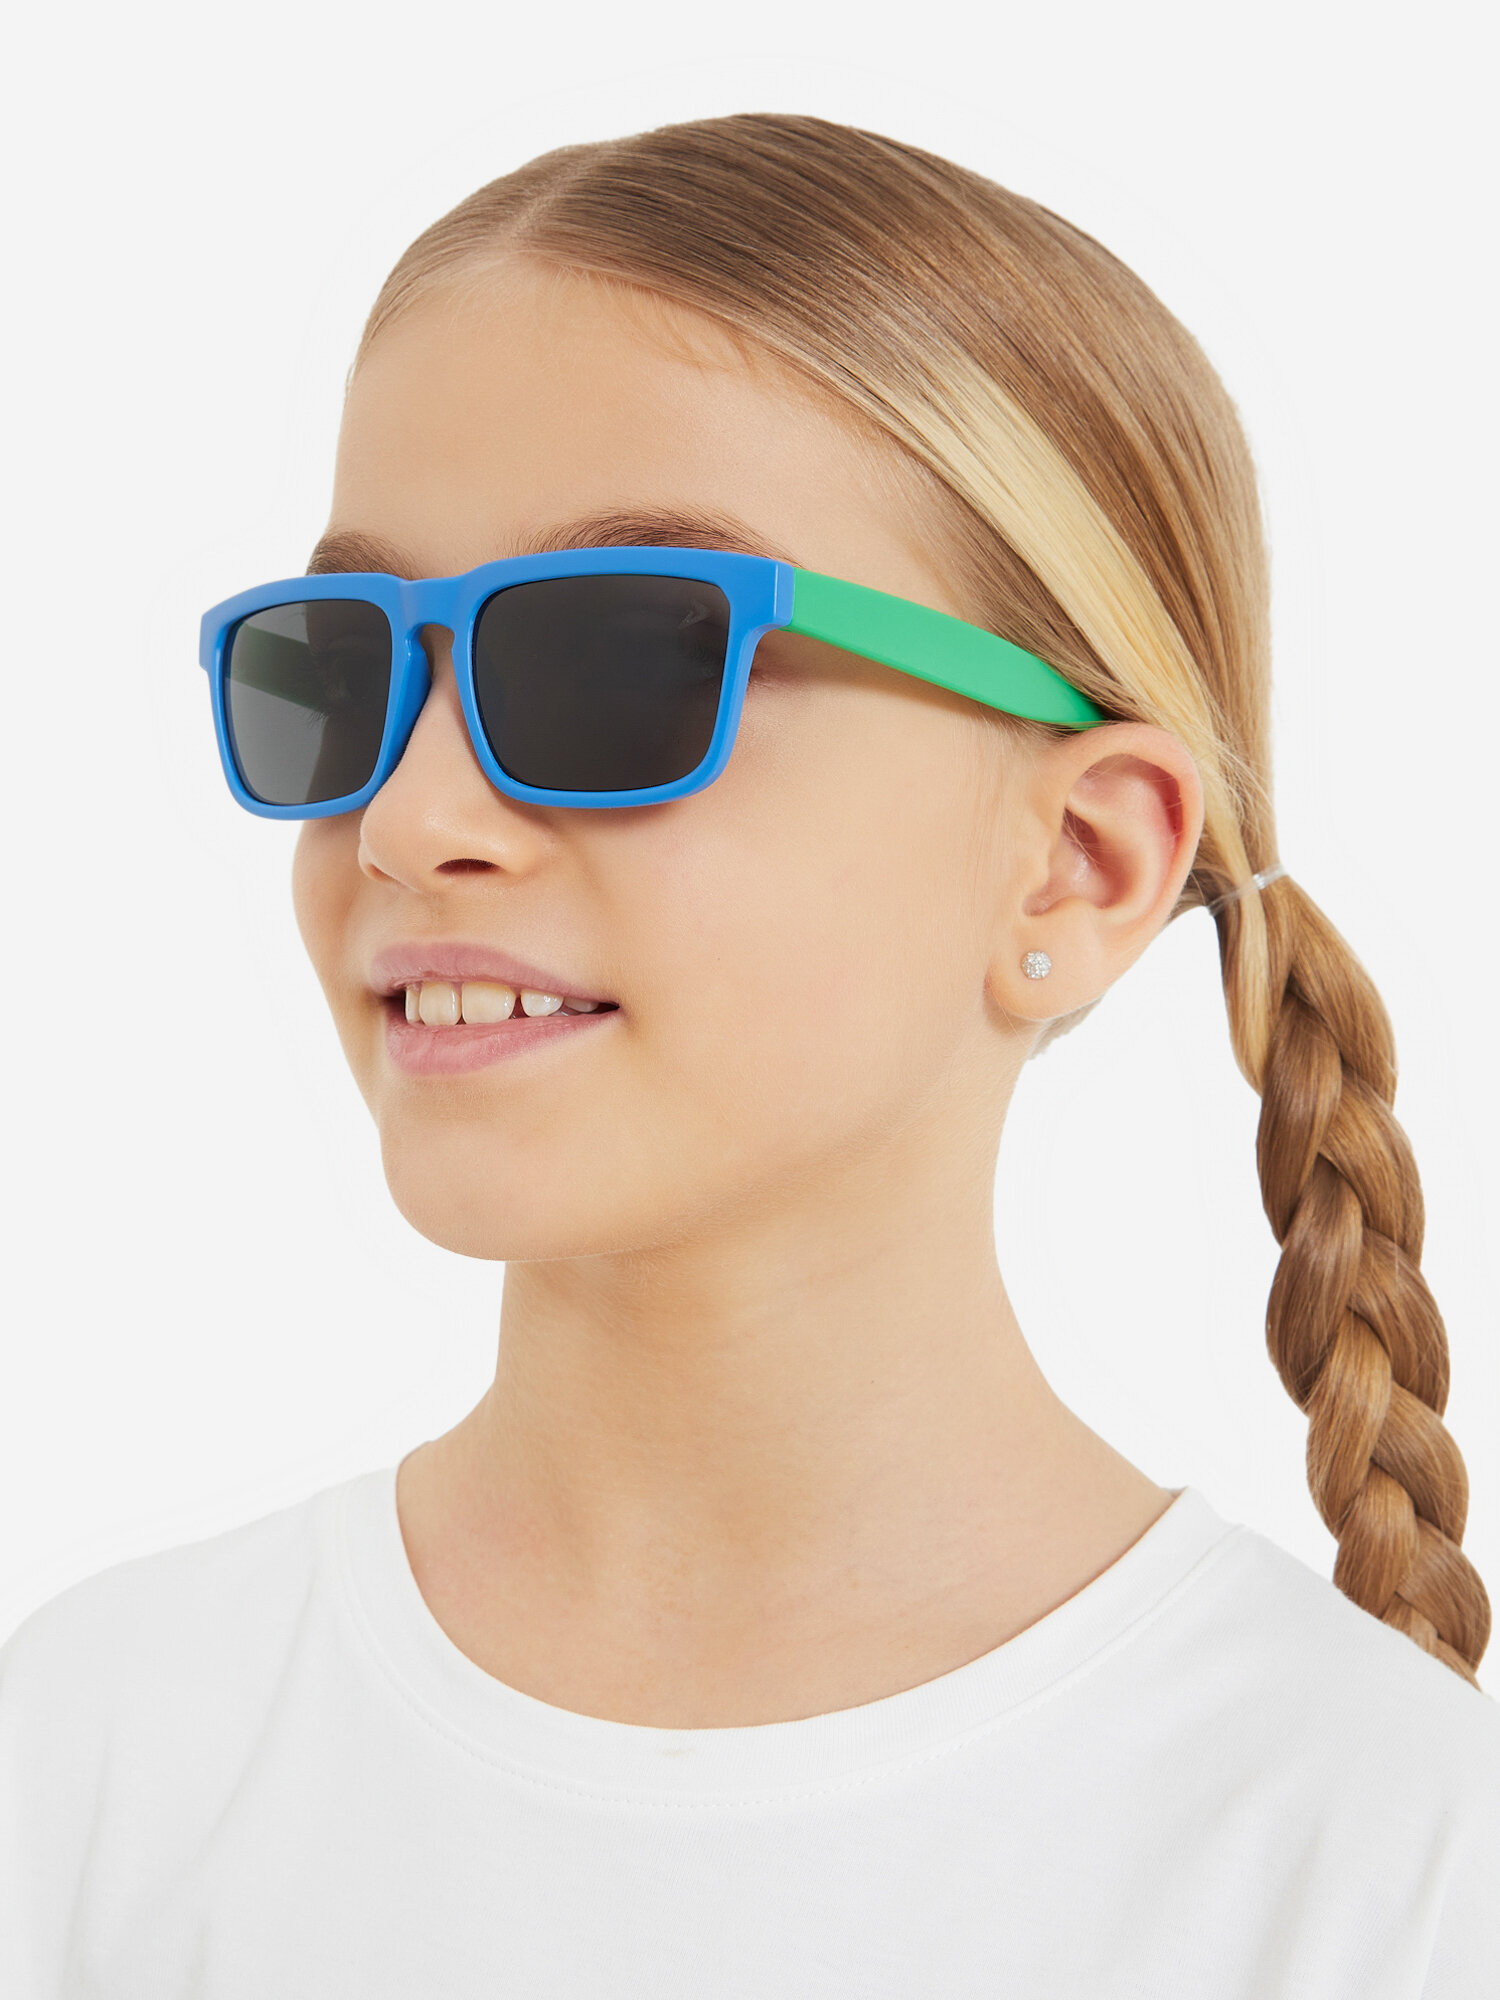 Солнцезащитные очки детские Demix Оранжевый; RUS: Б/р Ориг: one size